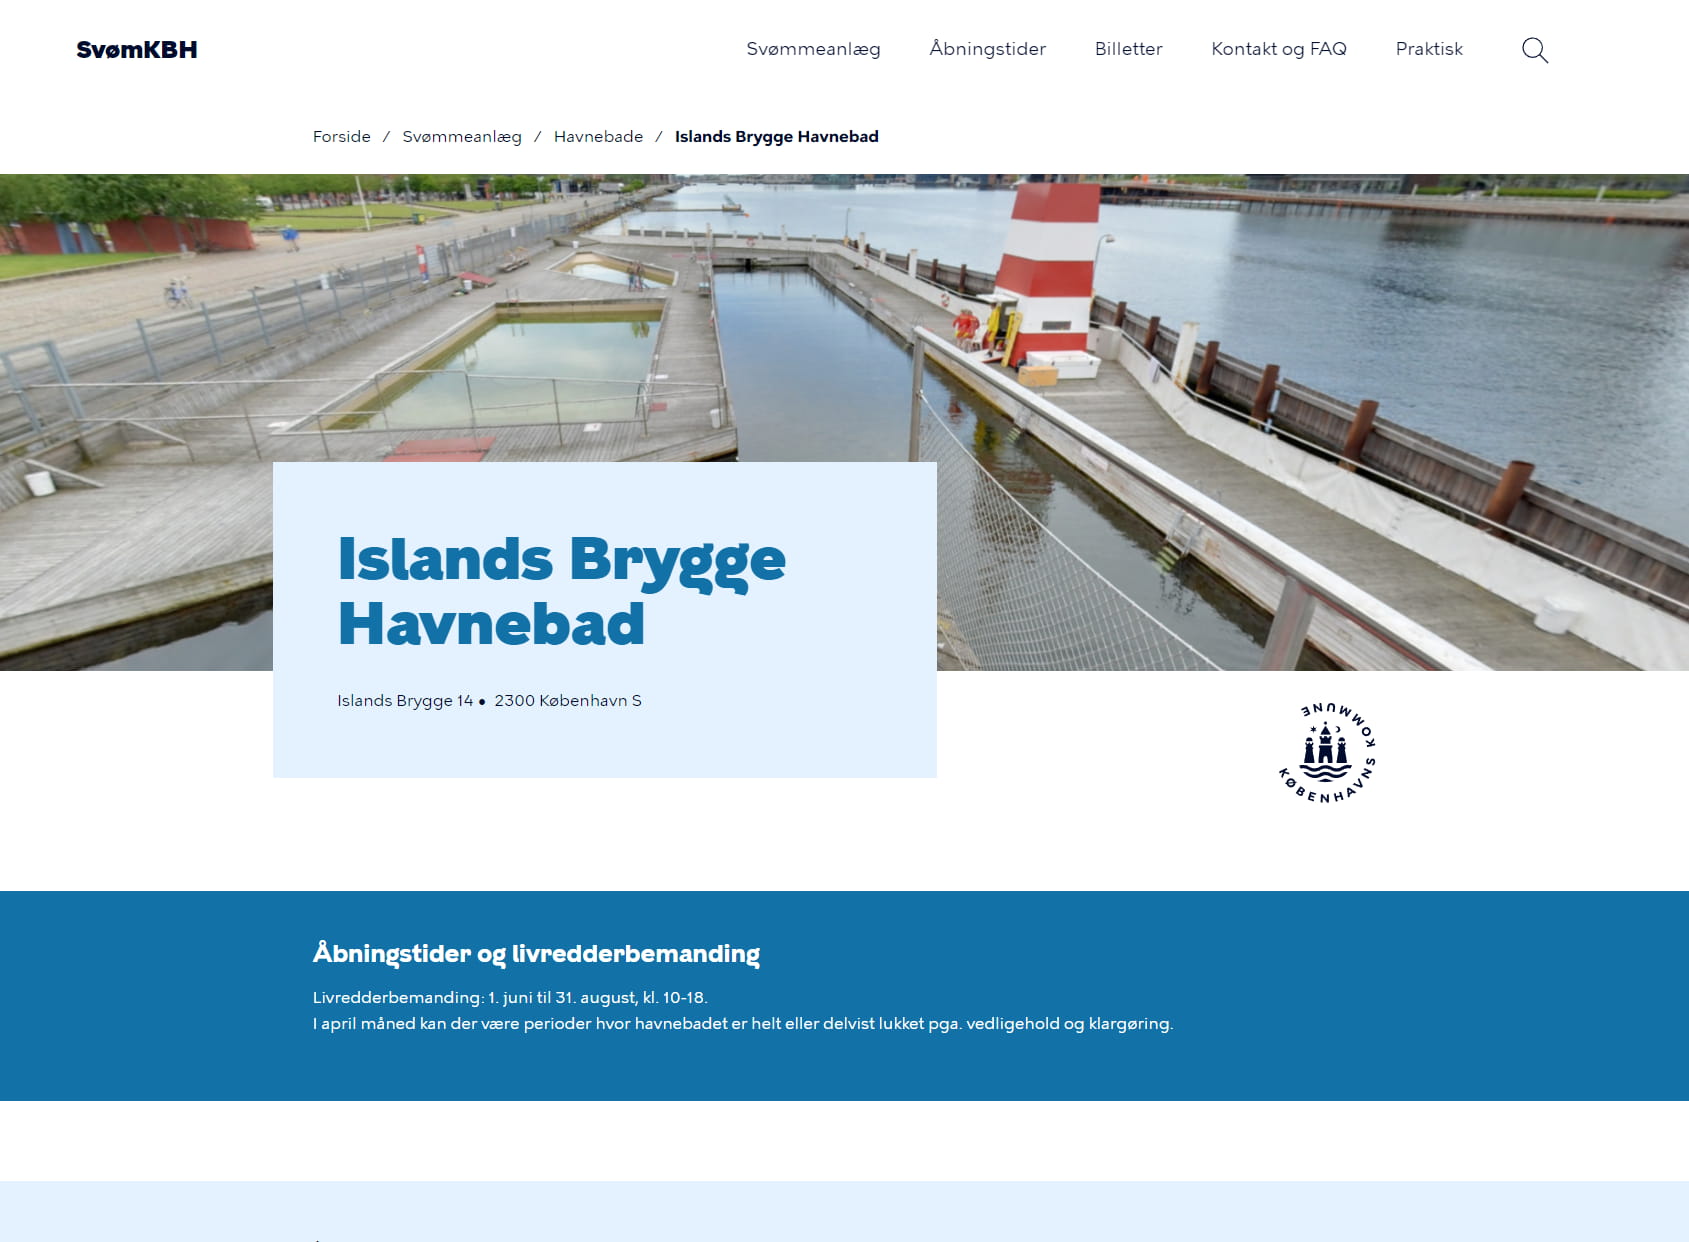 Havnebadet Islands Brygge